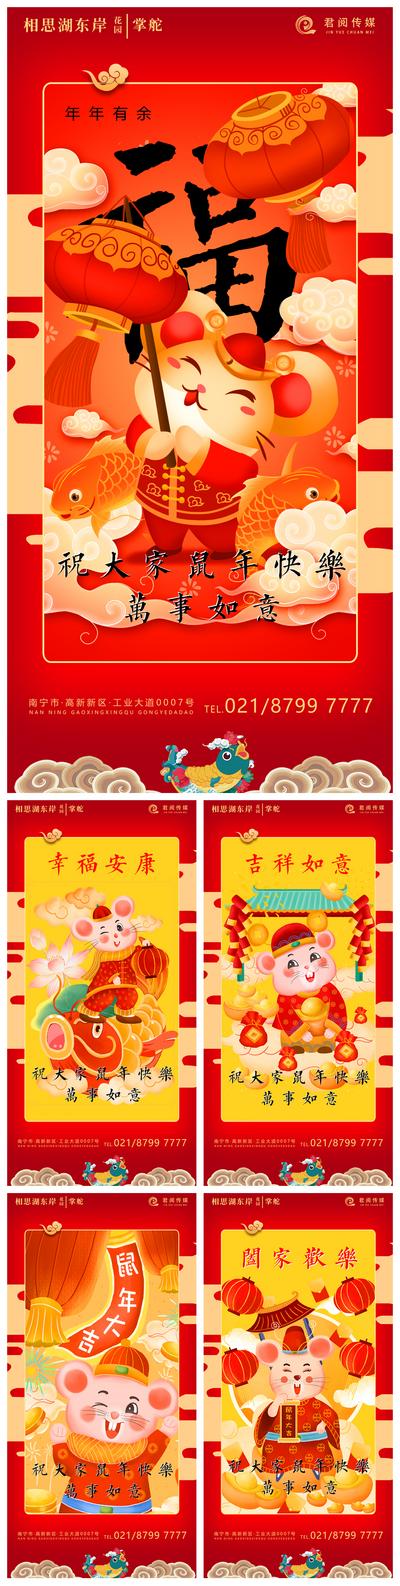 南门网 海报 新年 鼠年 春节 贺岁 拜年 2020年 中国传统节日 民俗 中国风 卡通 灯笼